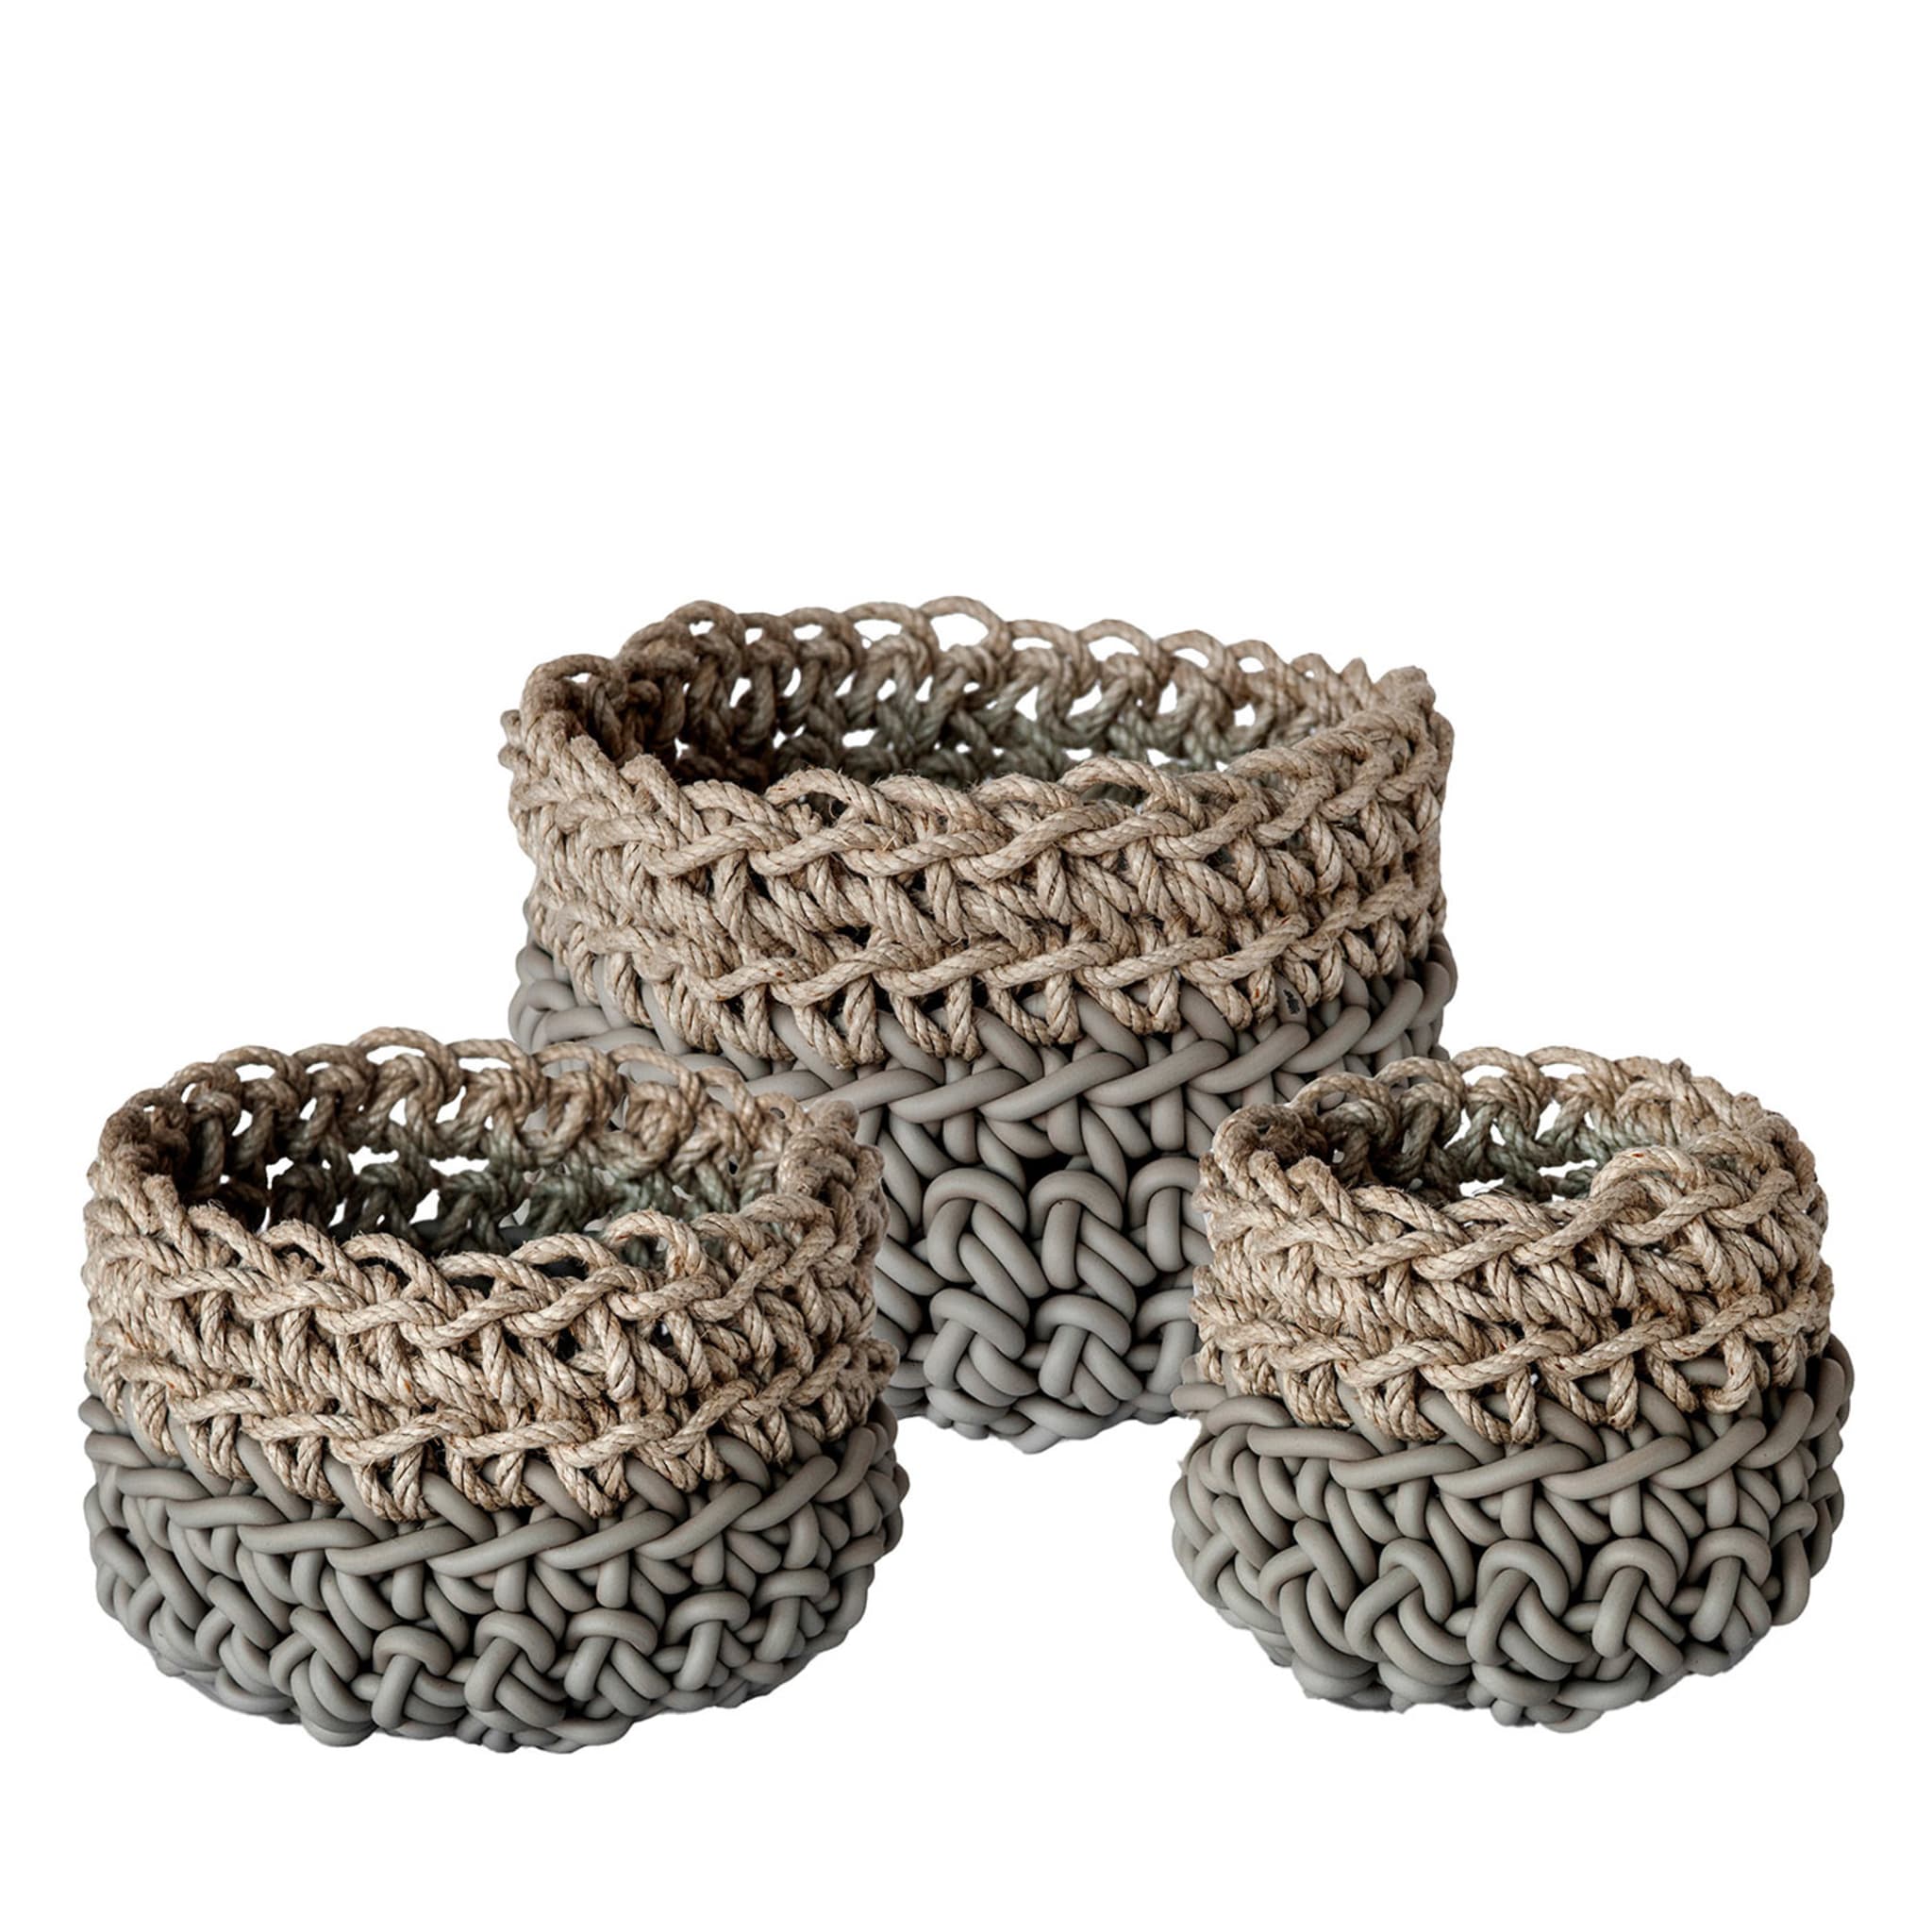 Canapa Set of 3 Gray Baskets by Rosanna Contadini - Main view